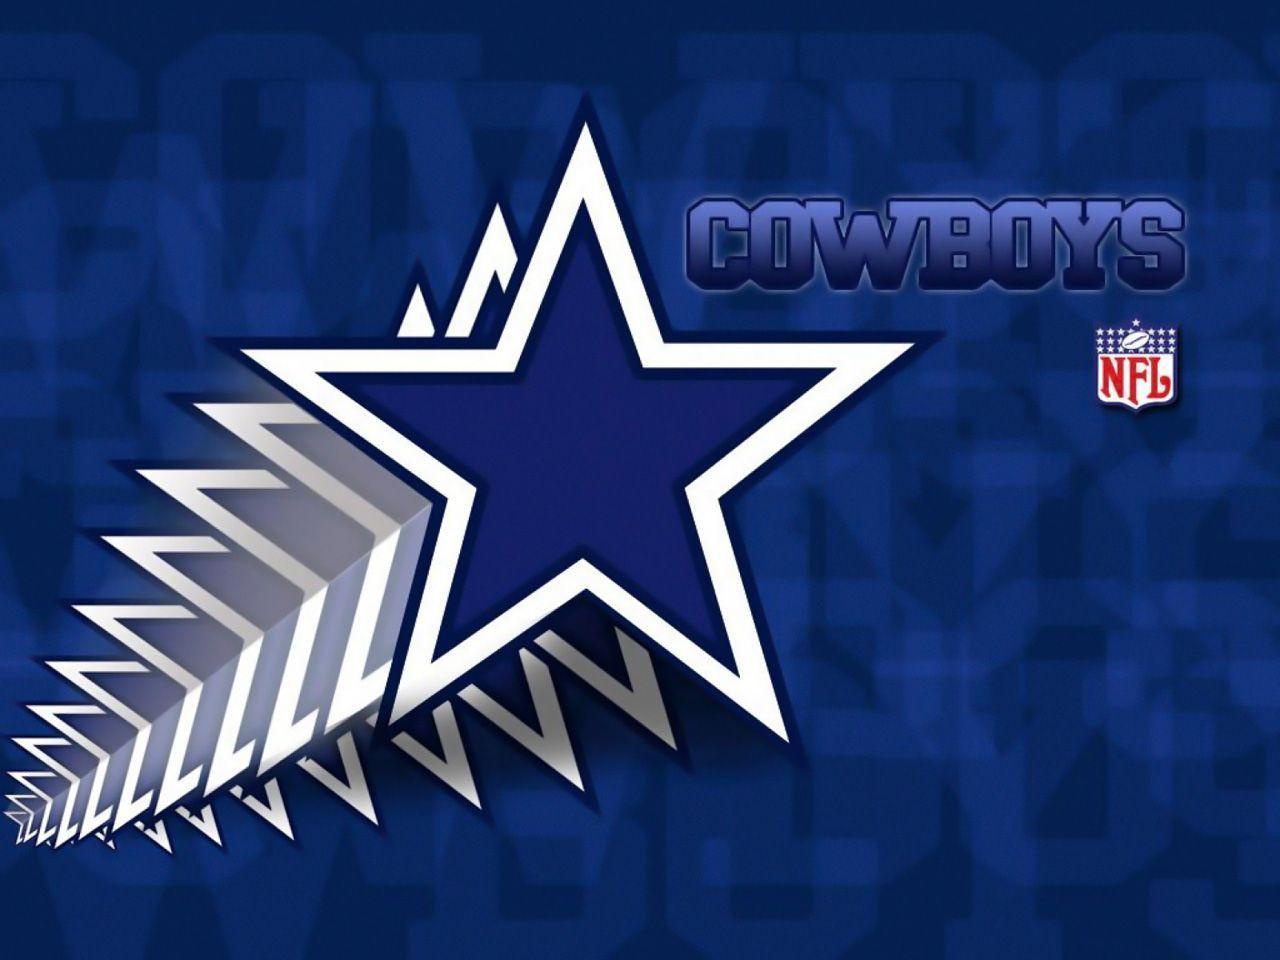 Dallas Cowboys wallpaper image. Dallas Cowboys wallpaper